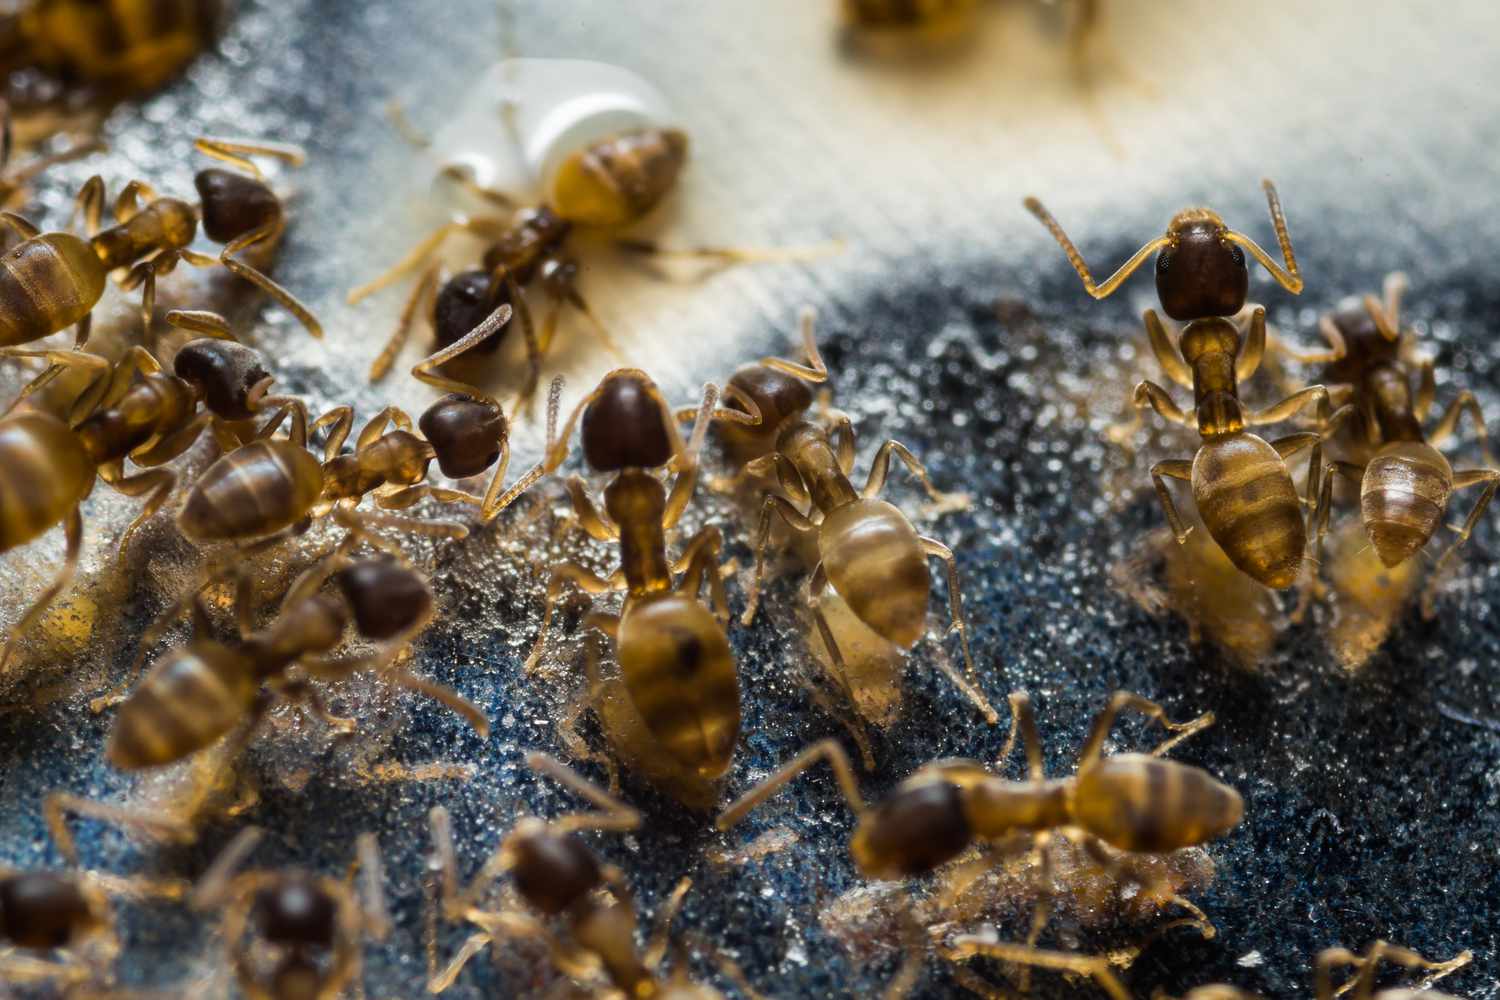 Formigas se alimentando de comida no chão